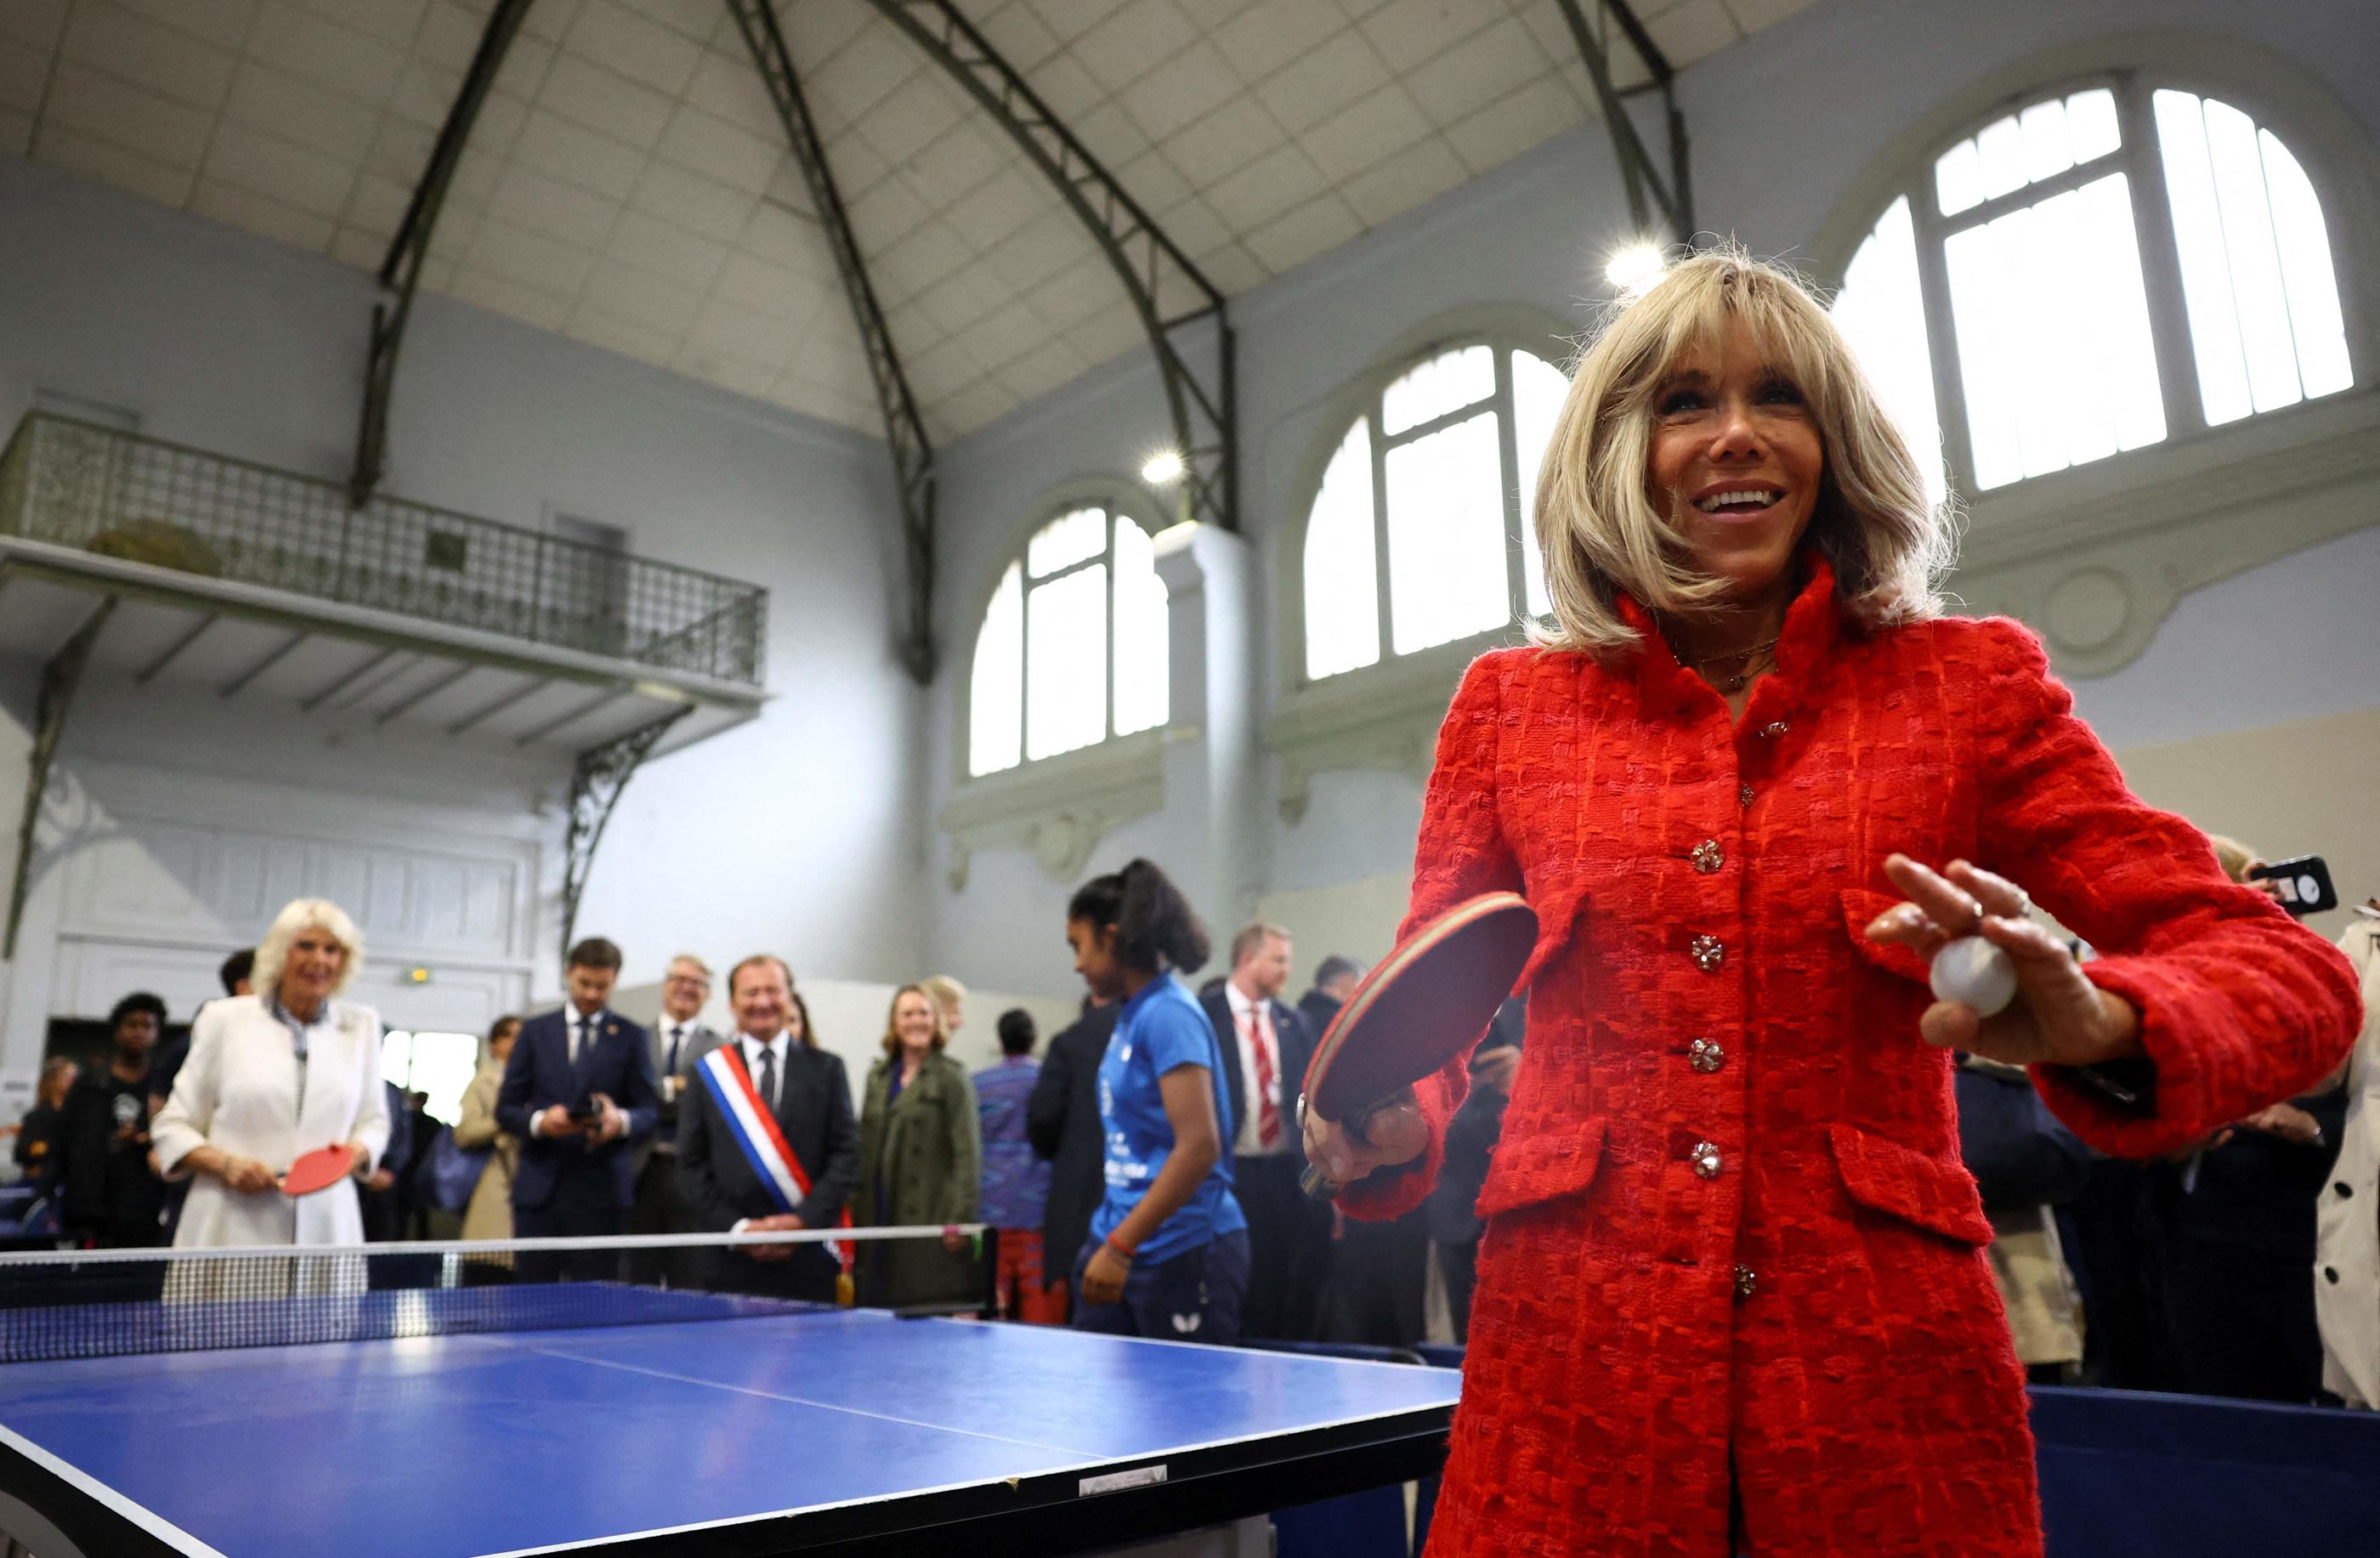 La reine consort Camilla Parker Bowles et la Première dame Brigitte Macron faisant quelques échanges de ping-pong à Saint-Denis, le 21 septembre 2023. AFP/HANNAH MCKAY